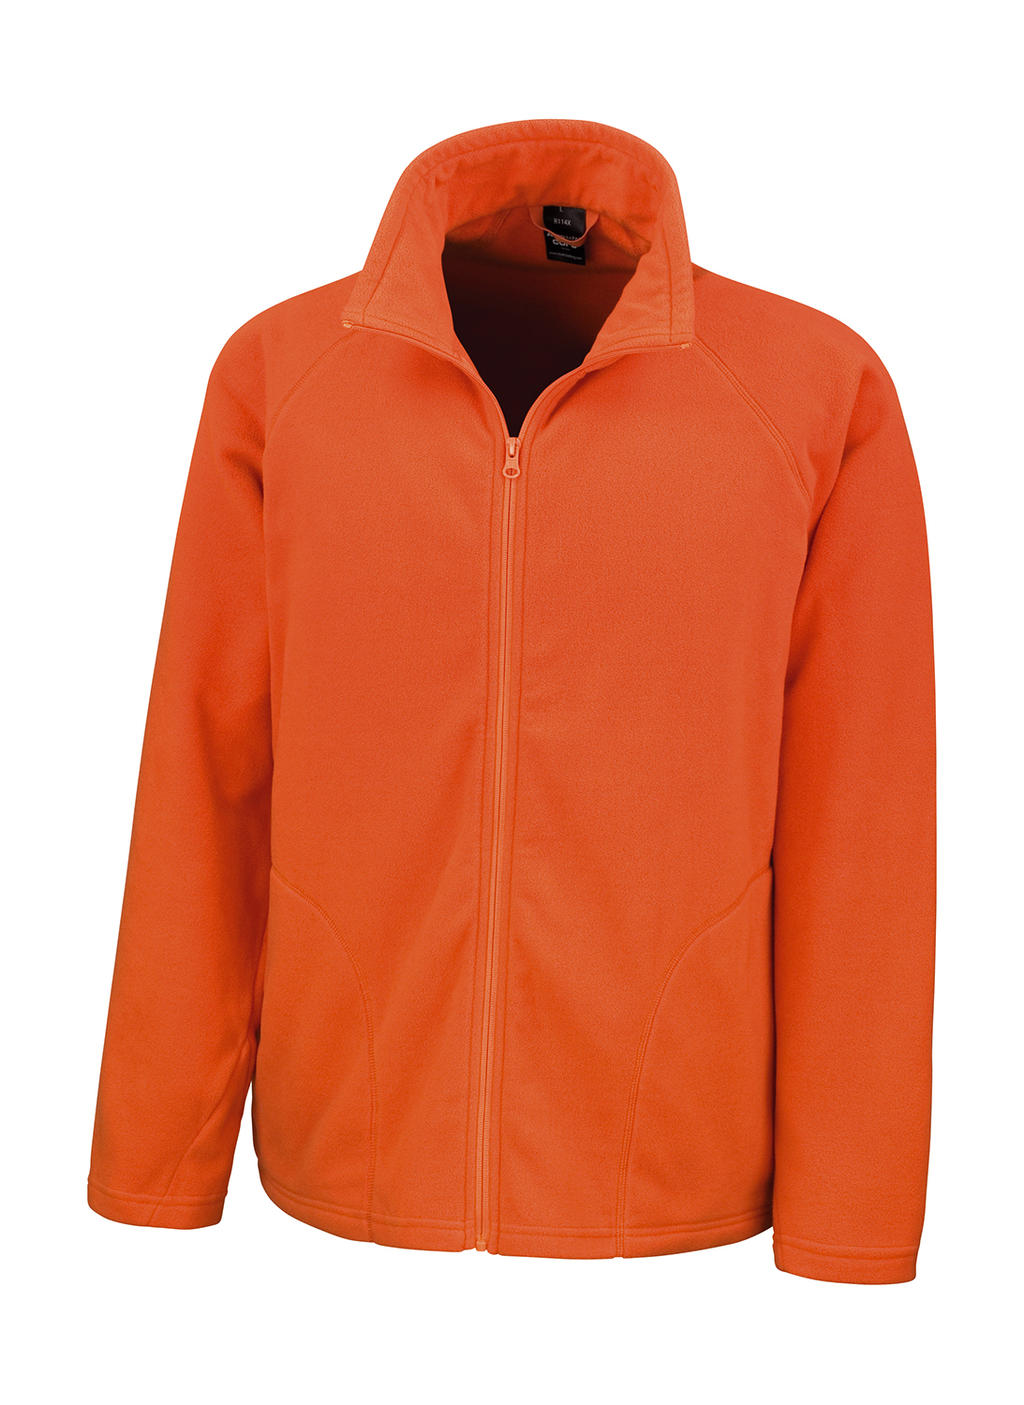 Microfleece Jacket - orange